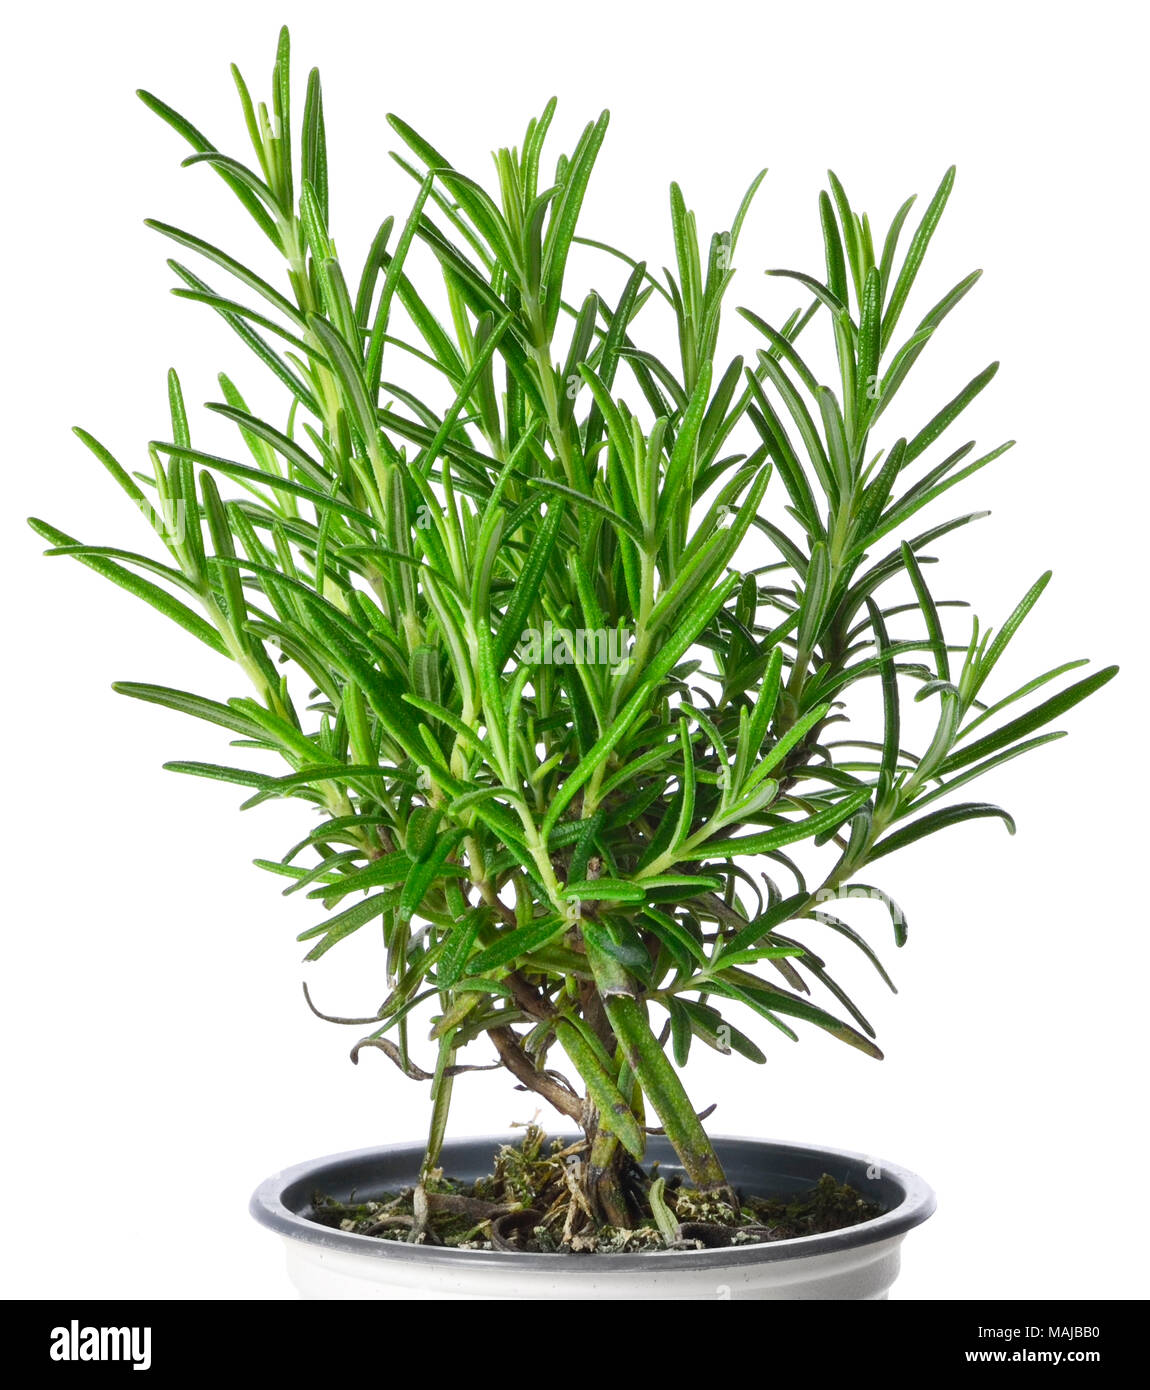 Frischem Rosmarin Pflanze oder Bush in einem Übertopf, isolierte Kraut auf weißem Hintergrund, kochen Kraut. Stockfoto